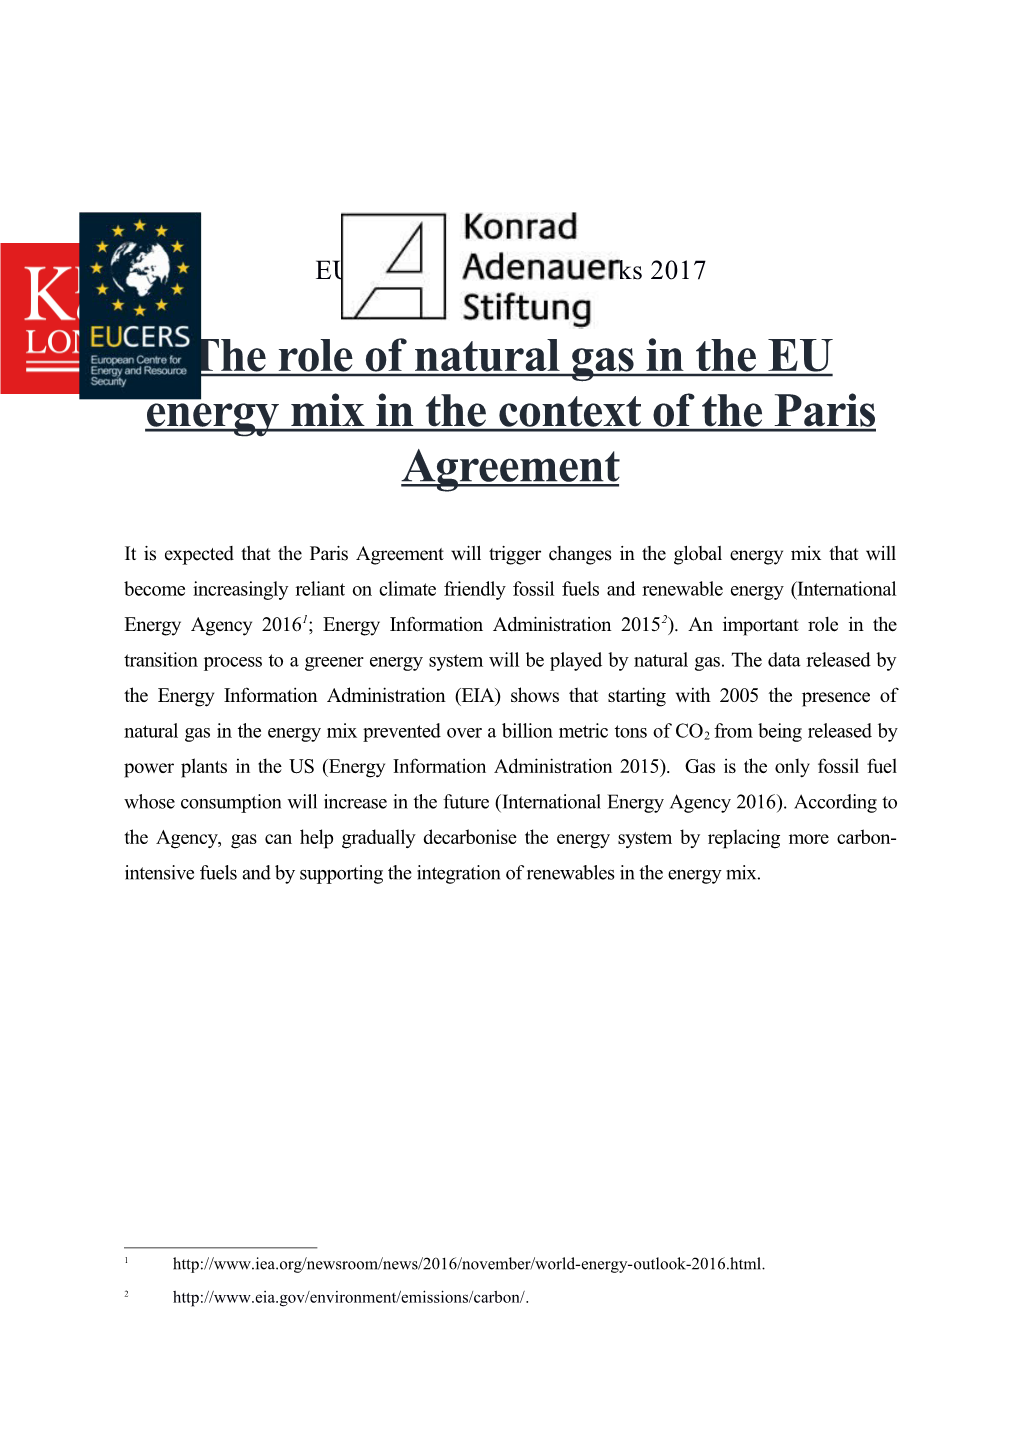 EUCERS/KAS Energy Talks 2017